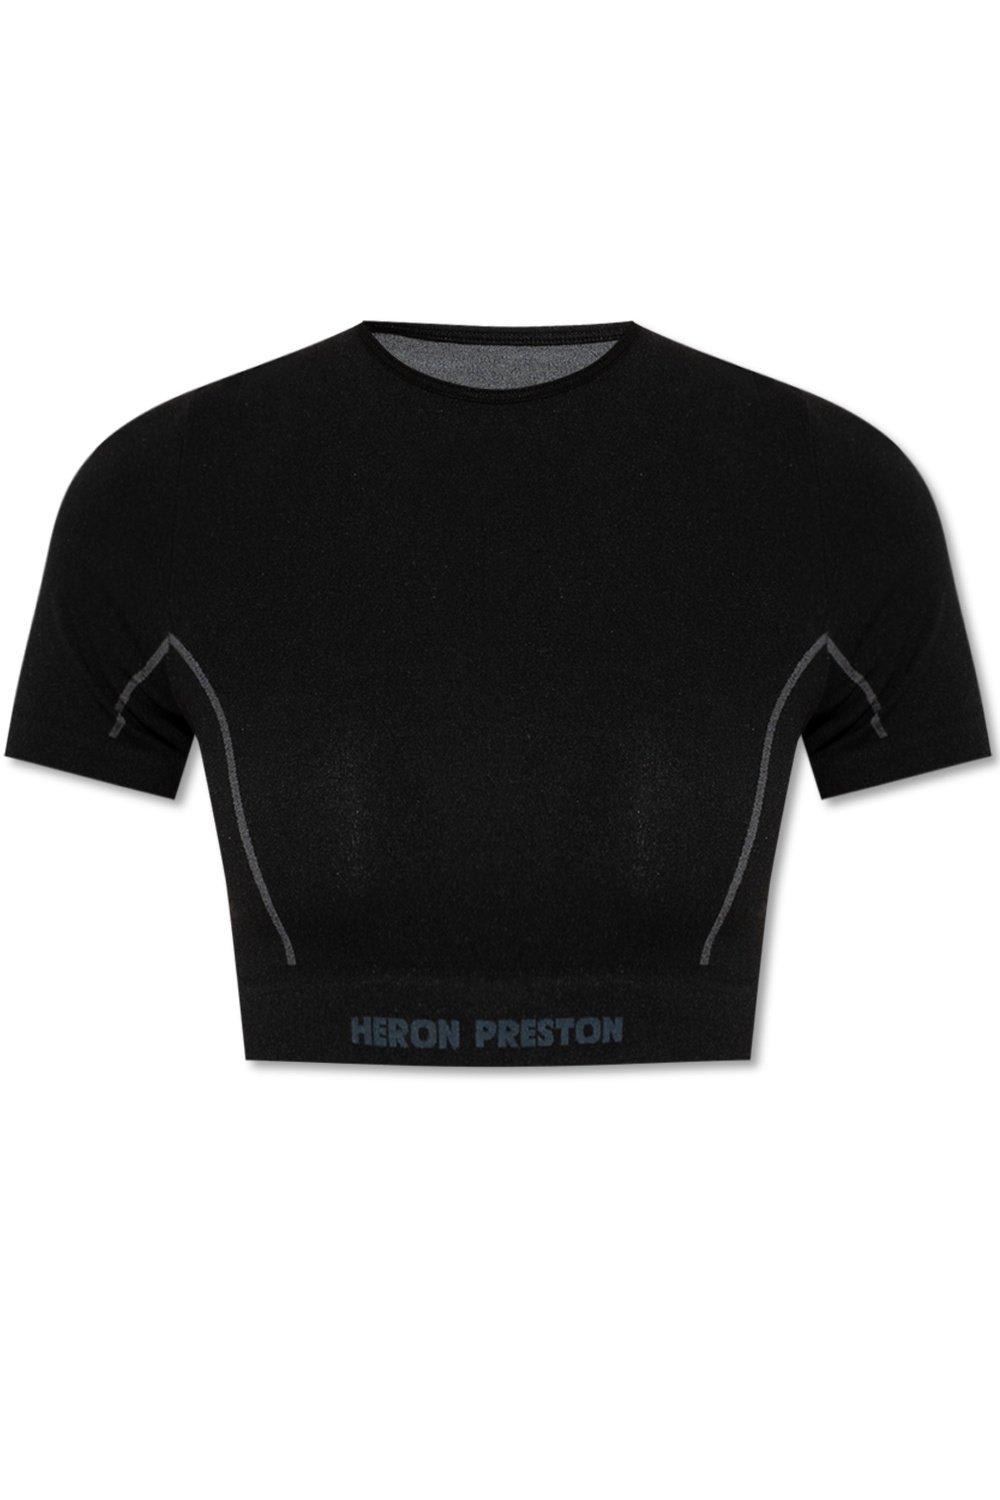 HERON PRESTON Logo Detailed Cropped T-shirt